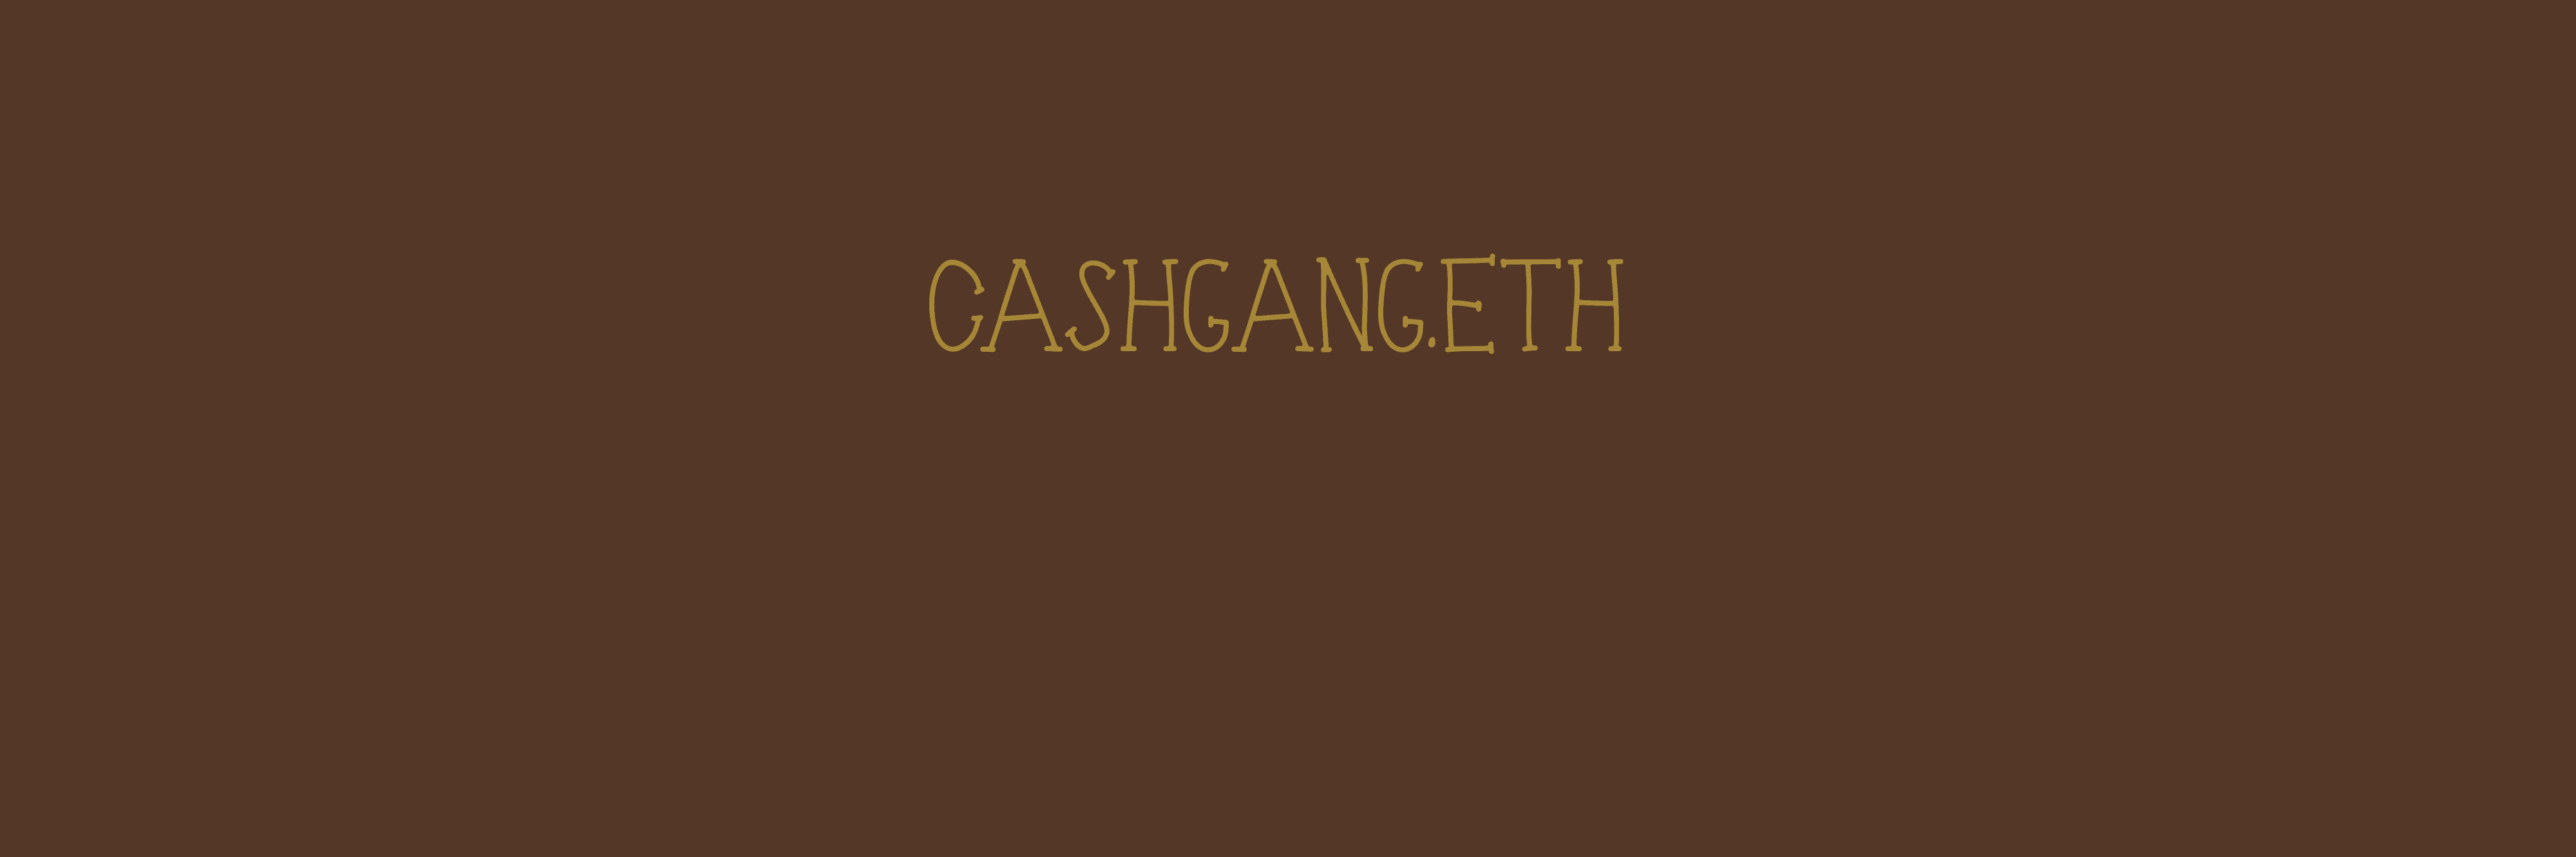 cashgang-eth バナー